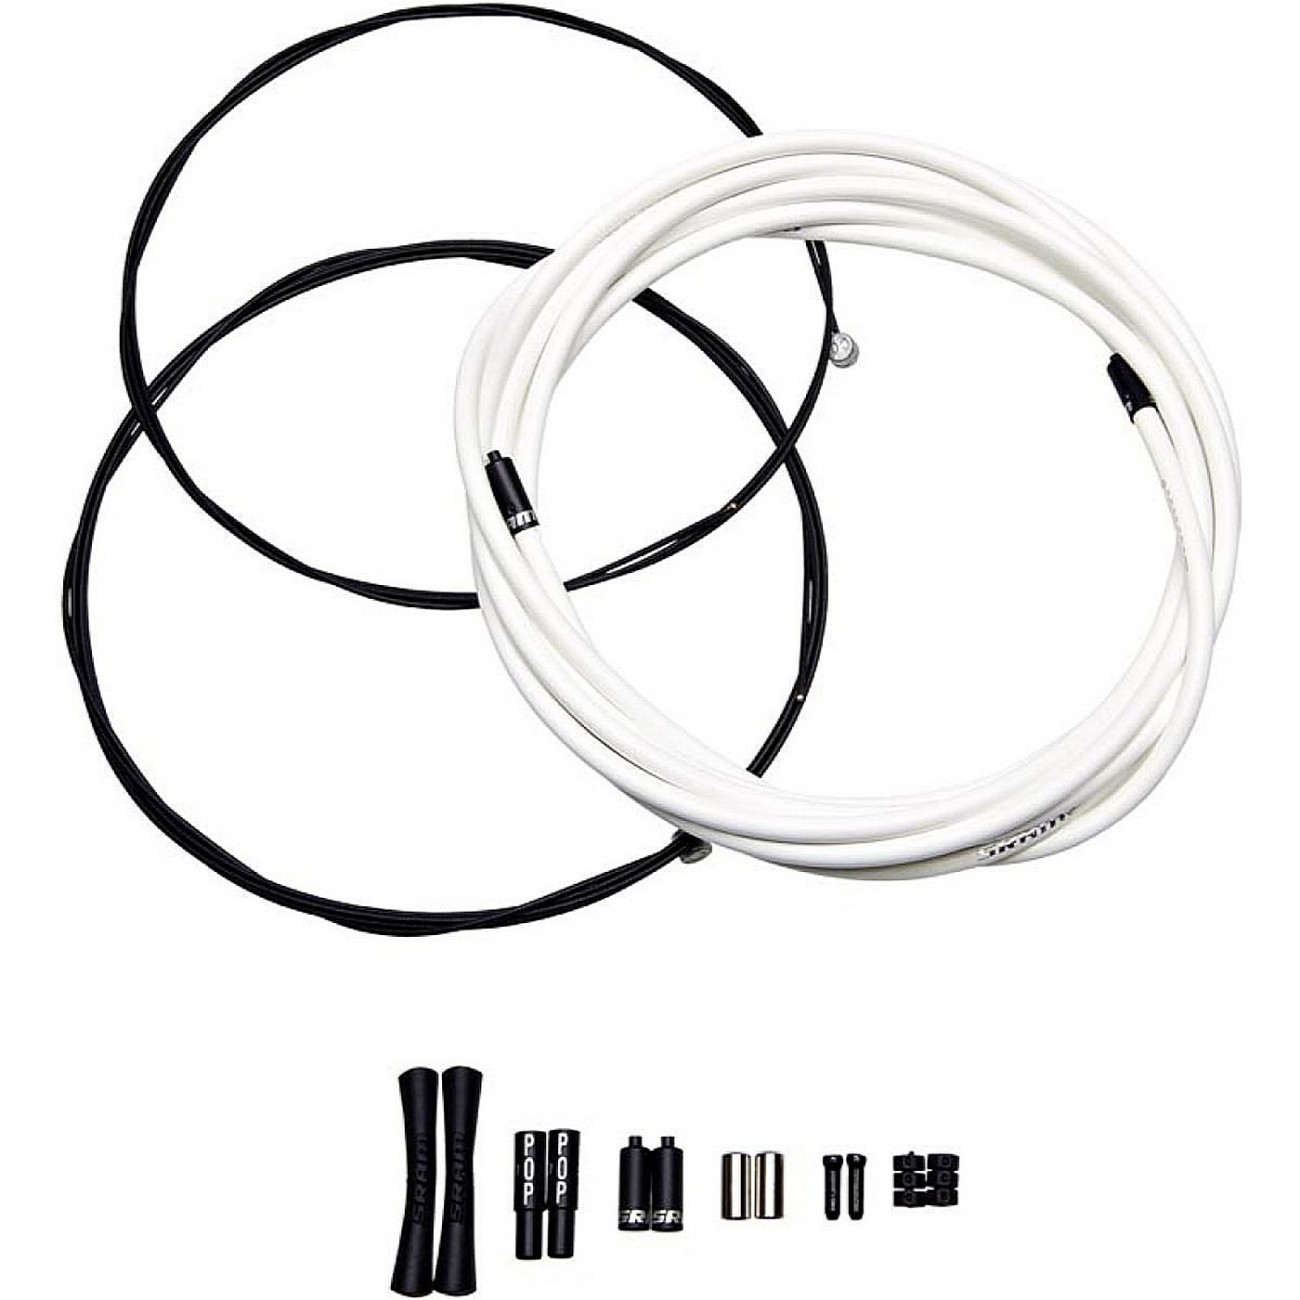 Sram bremszug kit slickwire pro road 1x 850mm 1x 1750mm 1 5mm 5mm kevlar blanc - 1